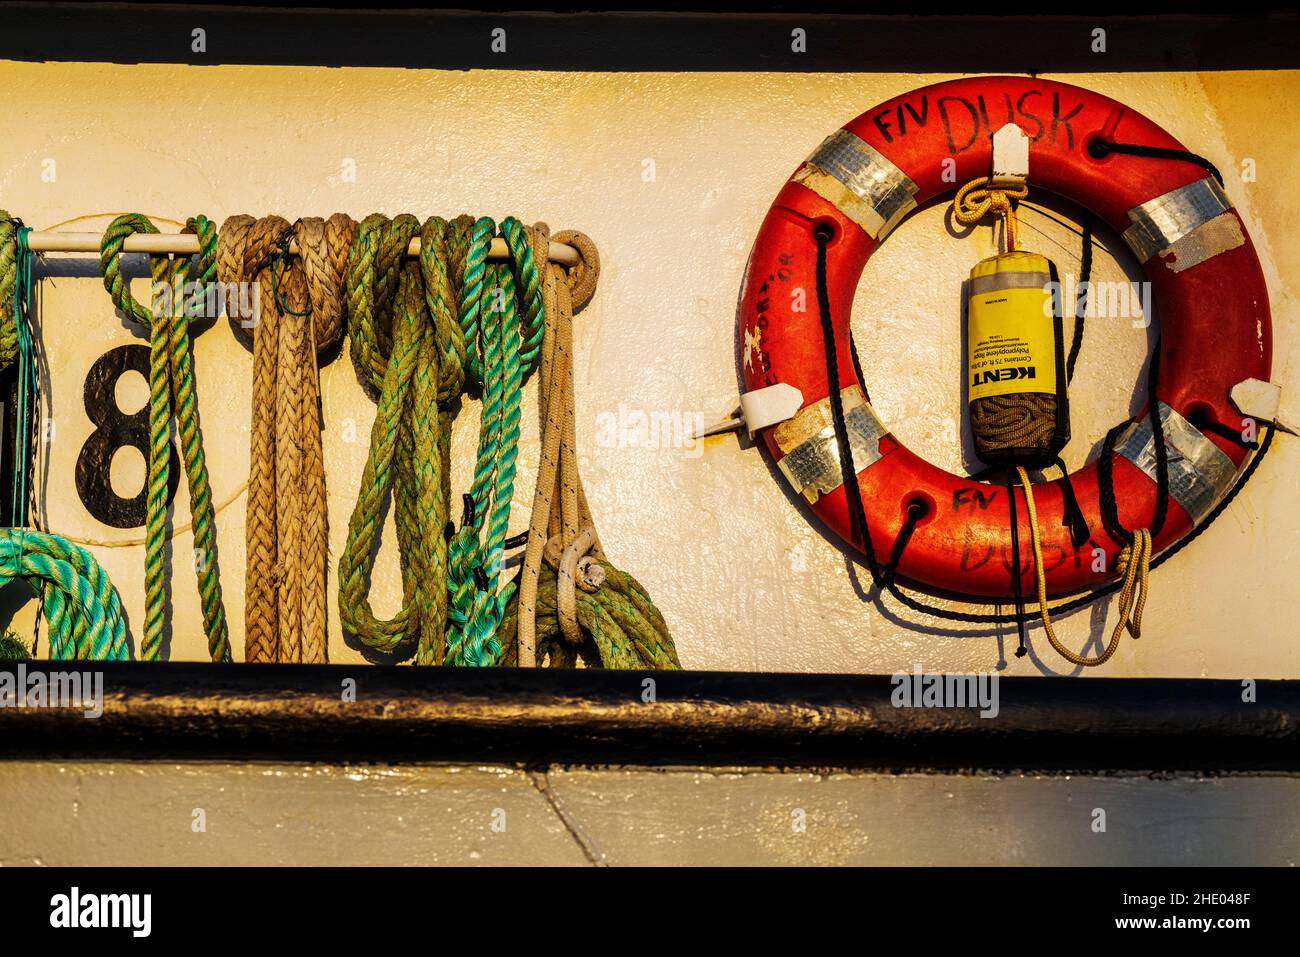 Détail des cordes et de l'équipement de pêche ; bateaux à quai ; port ; Newport ; Oregon ;ÉTATS-UNIS Banque D'Images